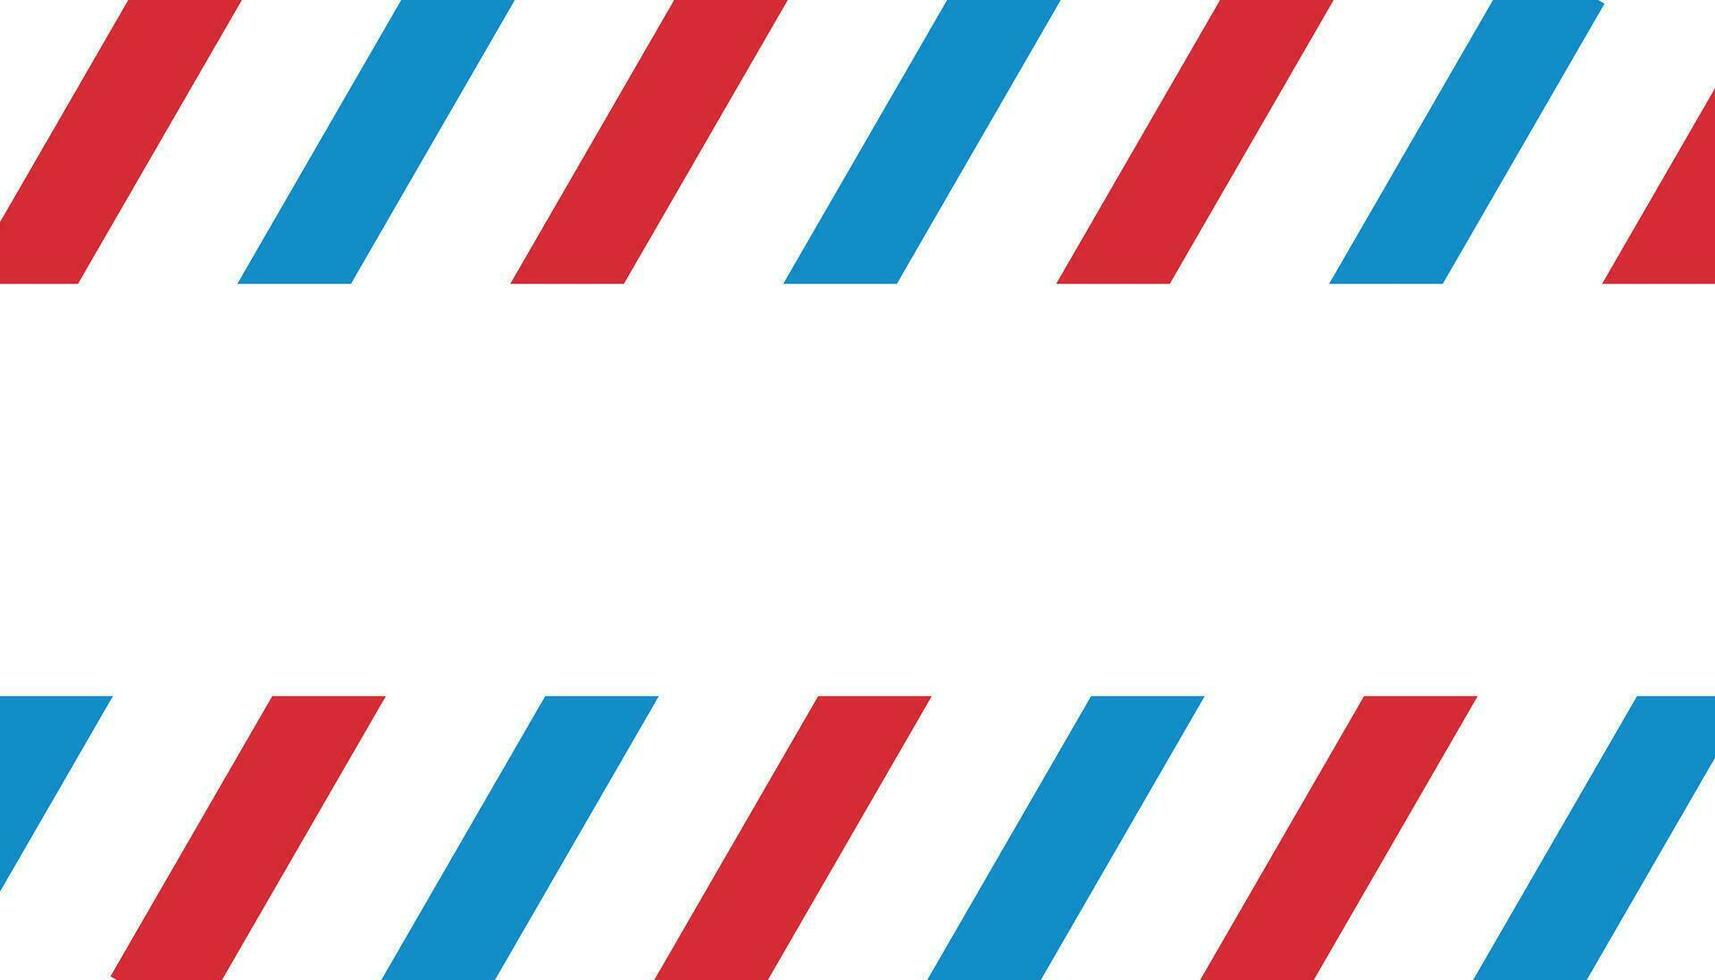 vermelho, azul, branco diagonal listras padronizar a partir de esquerda para certo vetor ilustração.